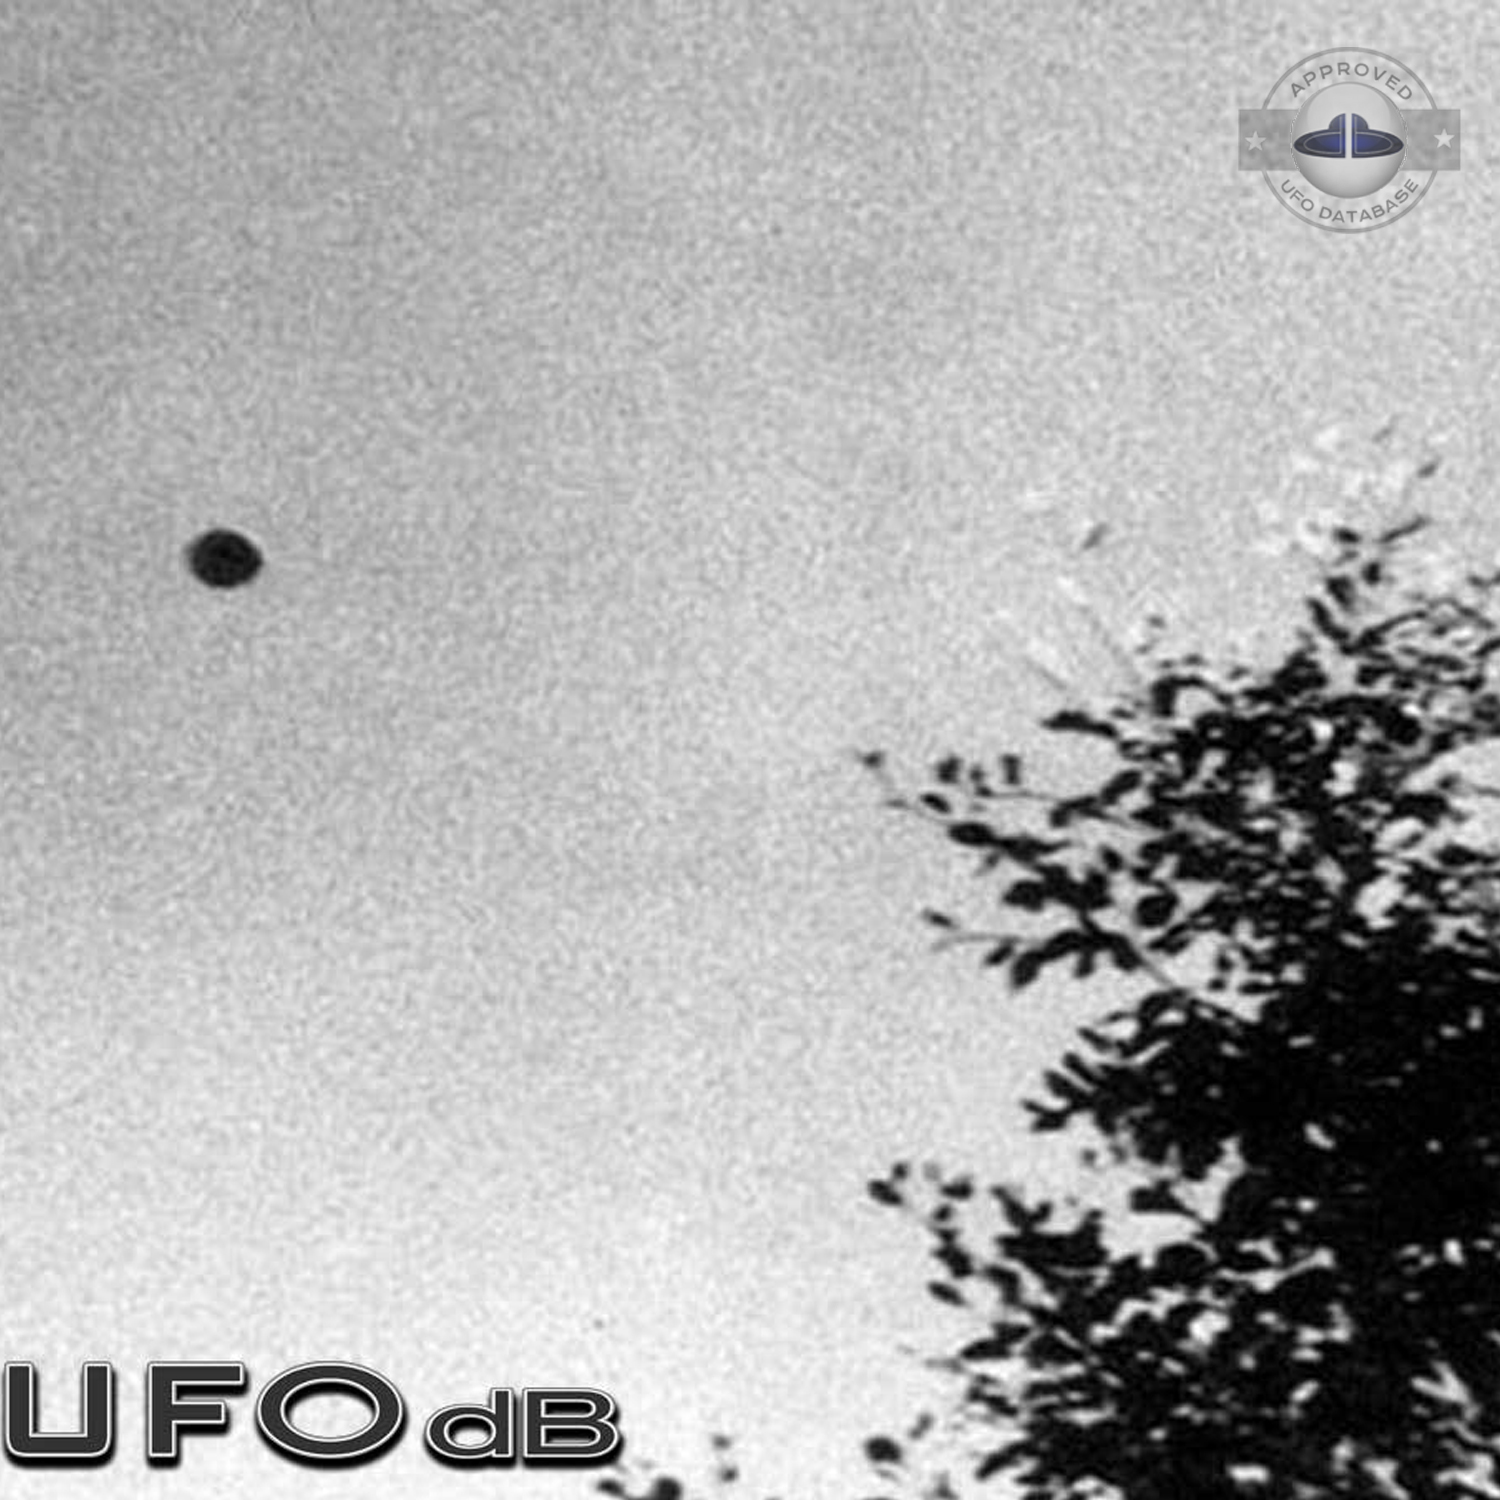 UFO picture taken by Andre Fregnale around lake Chauvet in Picherande UFO Picture #71-2